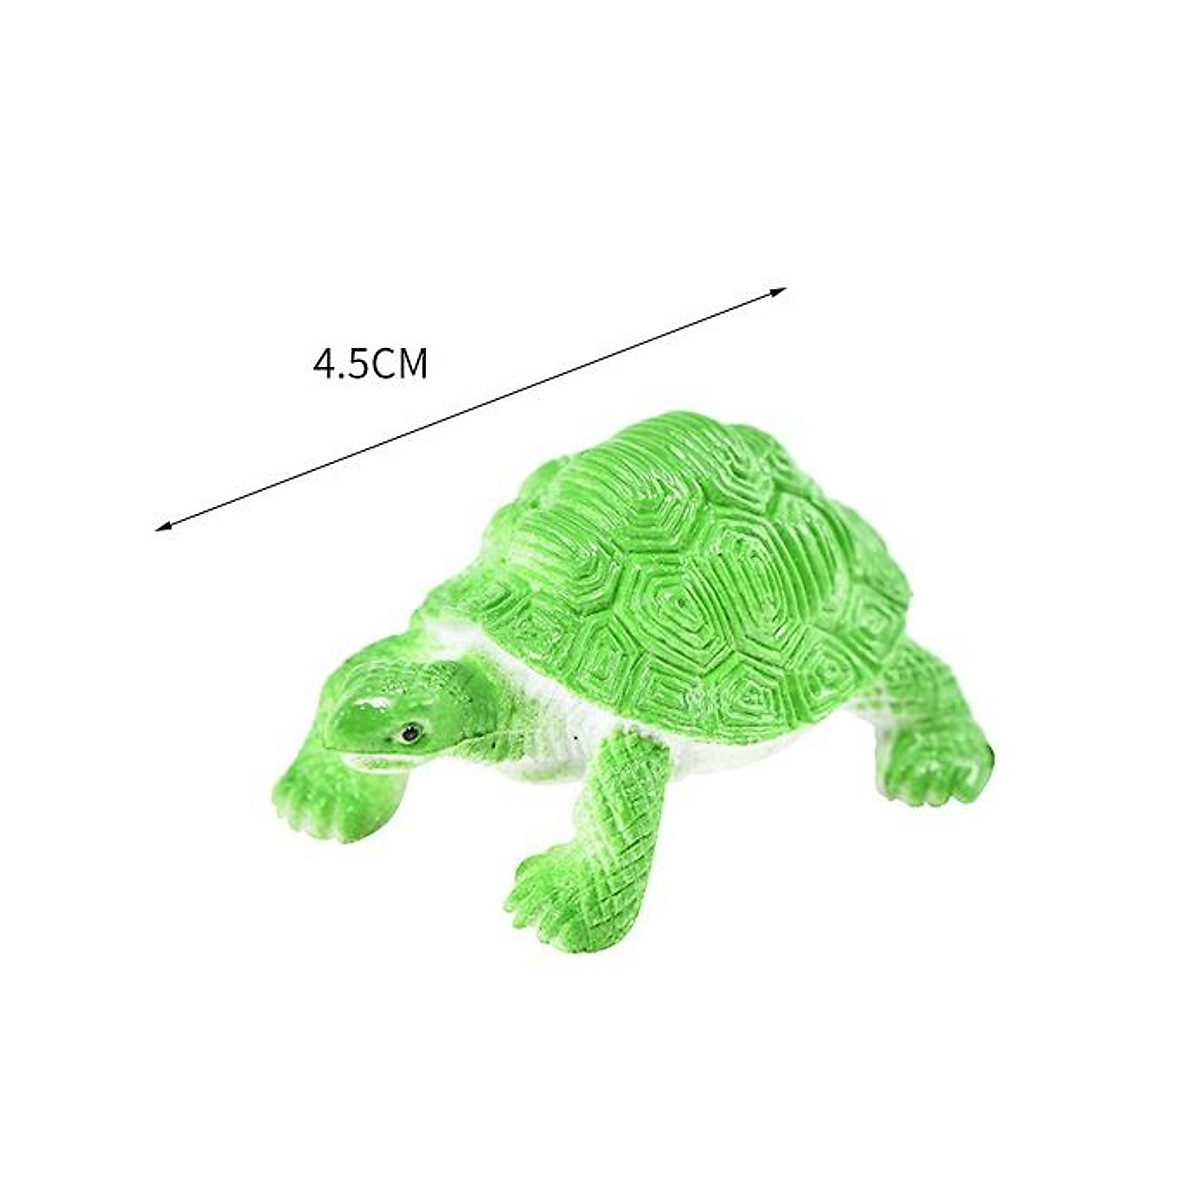 Đồ chơi 12 con Rùa Natural Turtle 5 cm mô hình đáng yêu bằng nhựa cứng